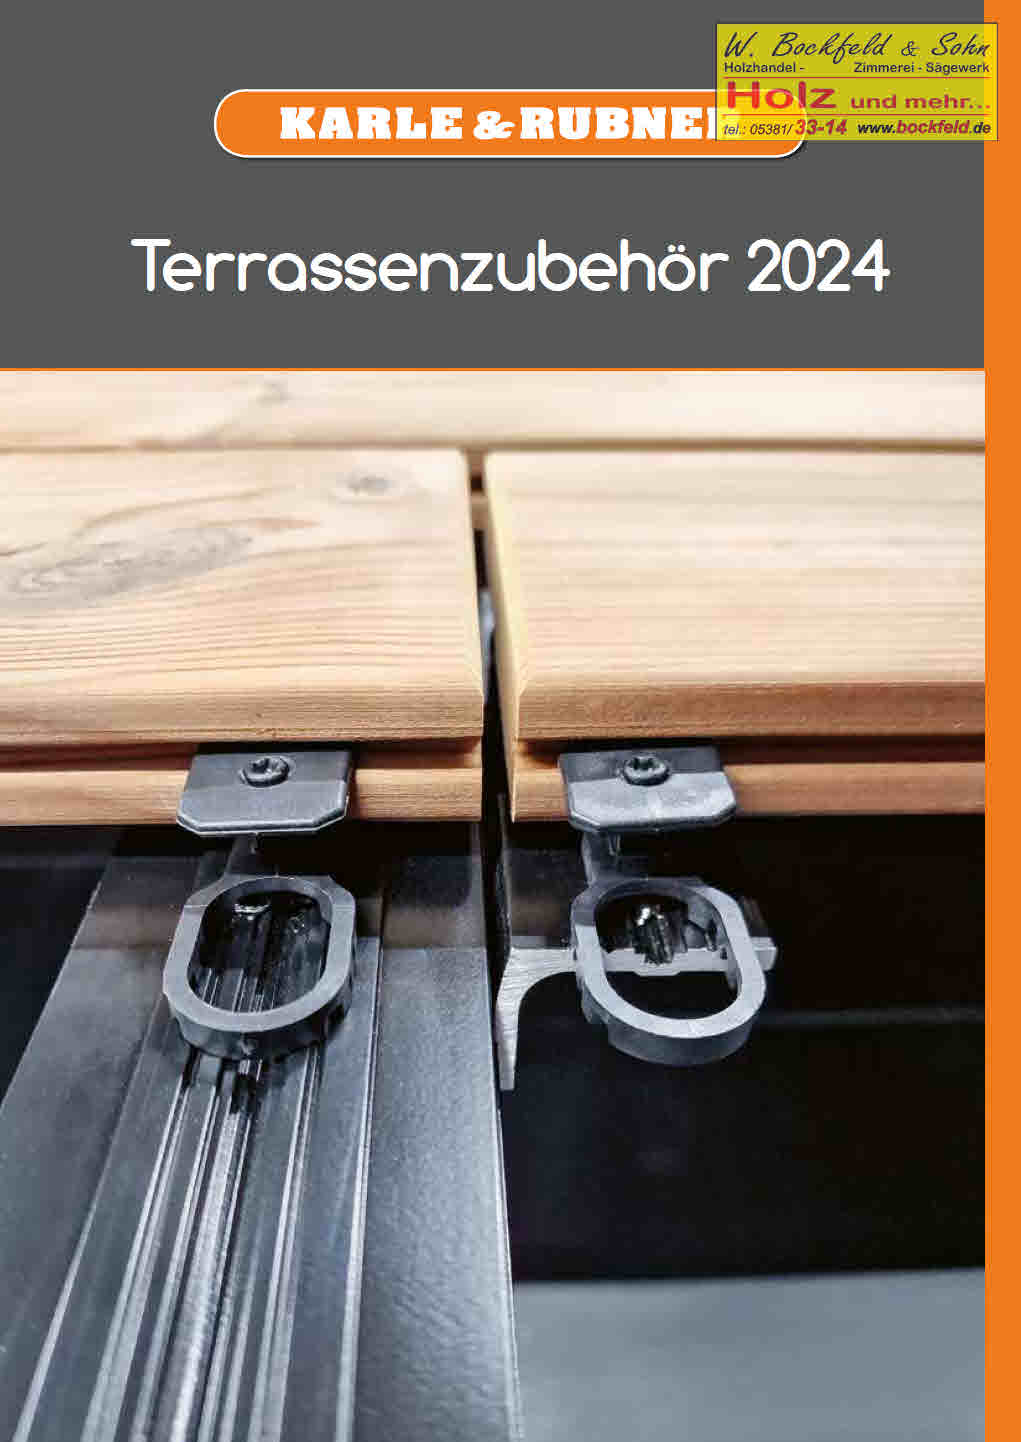 KarleRubner terrassenzubehoer 2024 wbs low seite1 - Kataloge